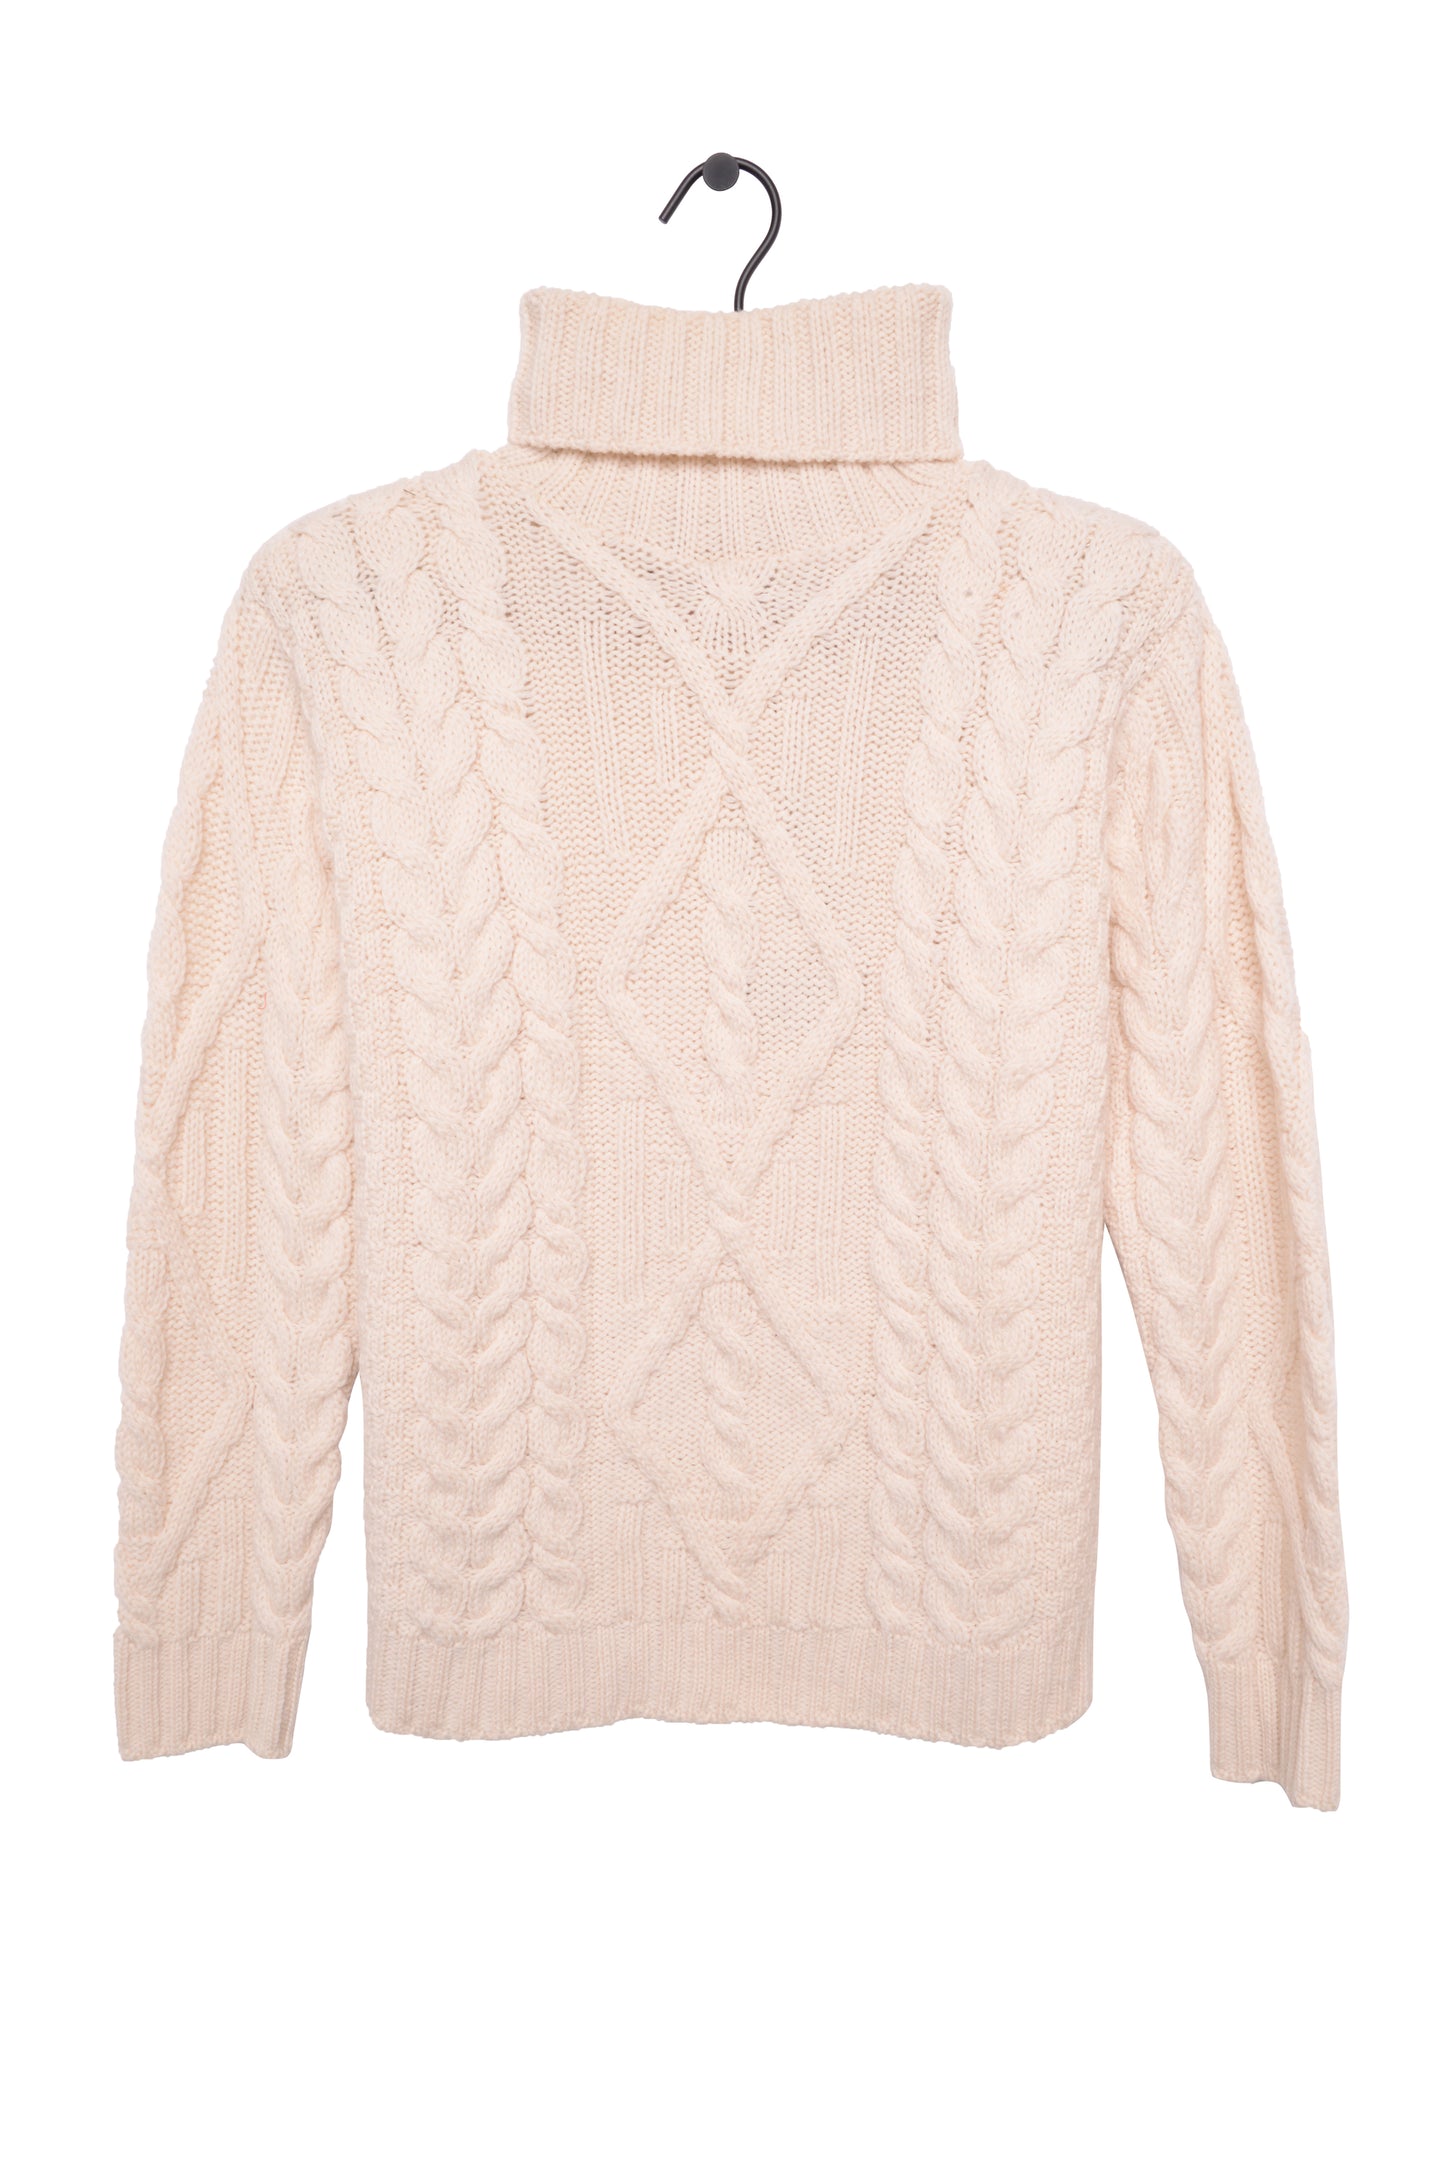 Irish Cable Knit Wool Sweater